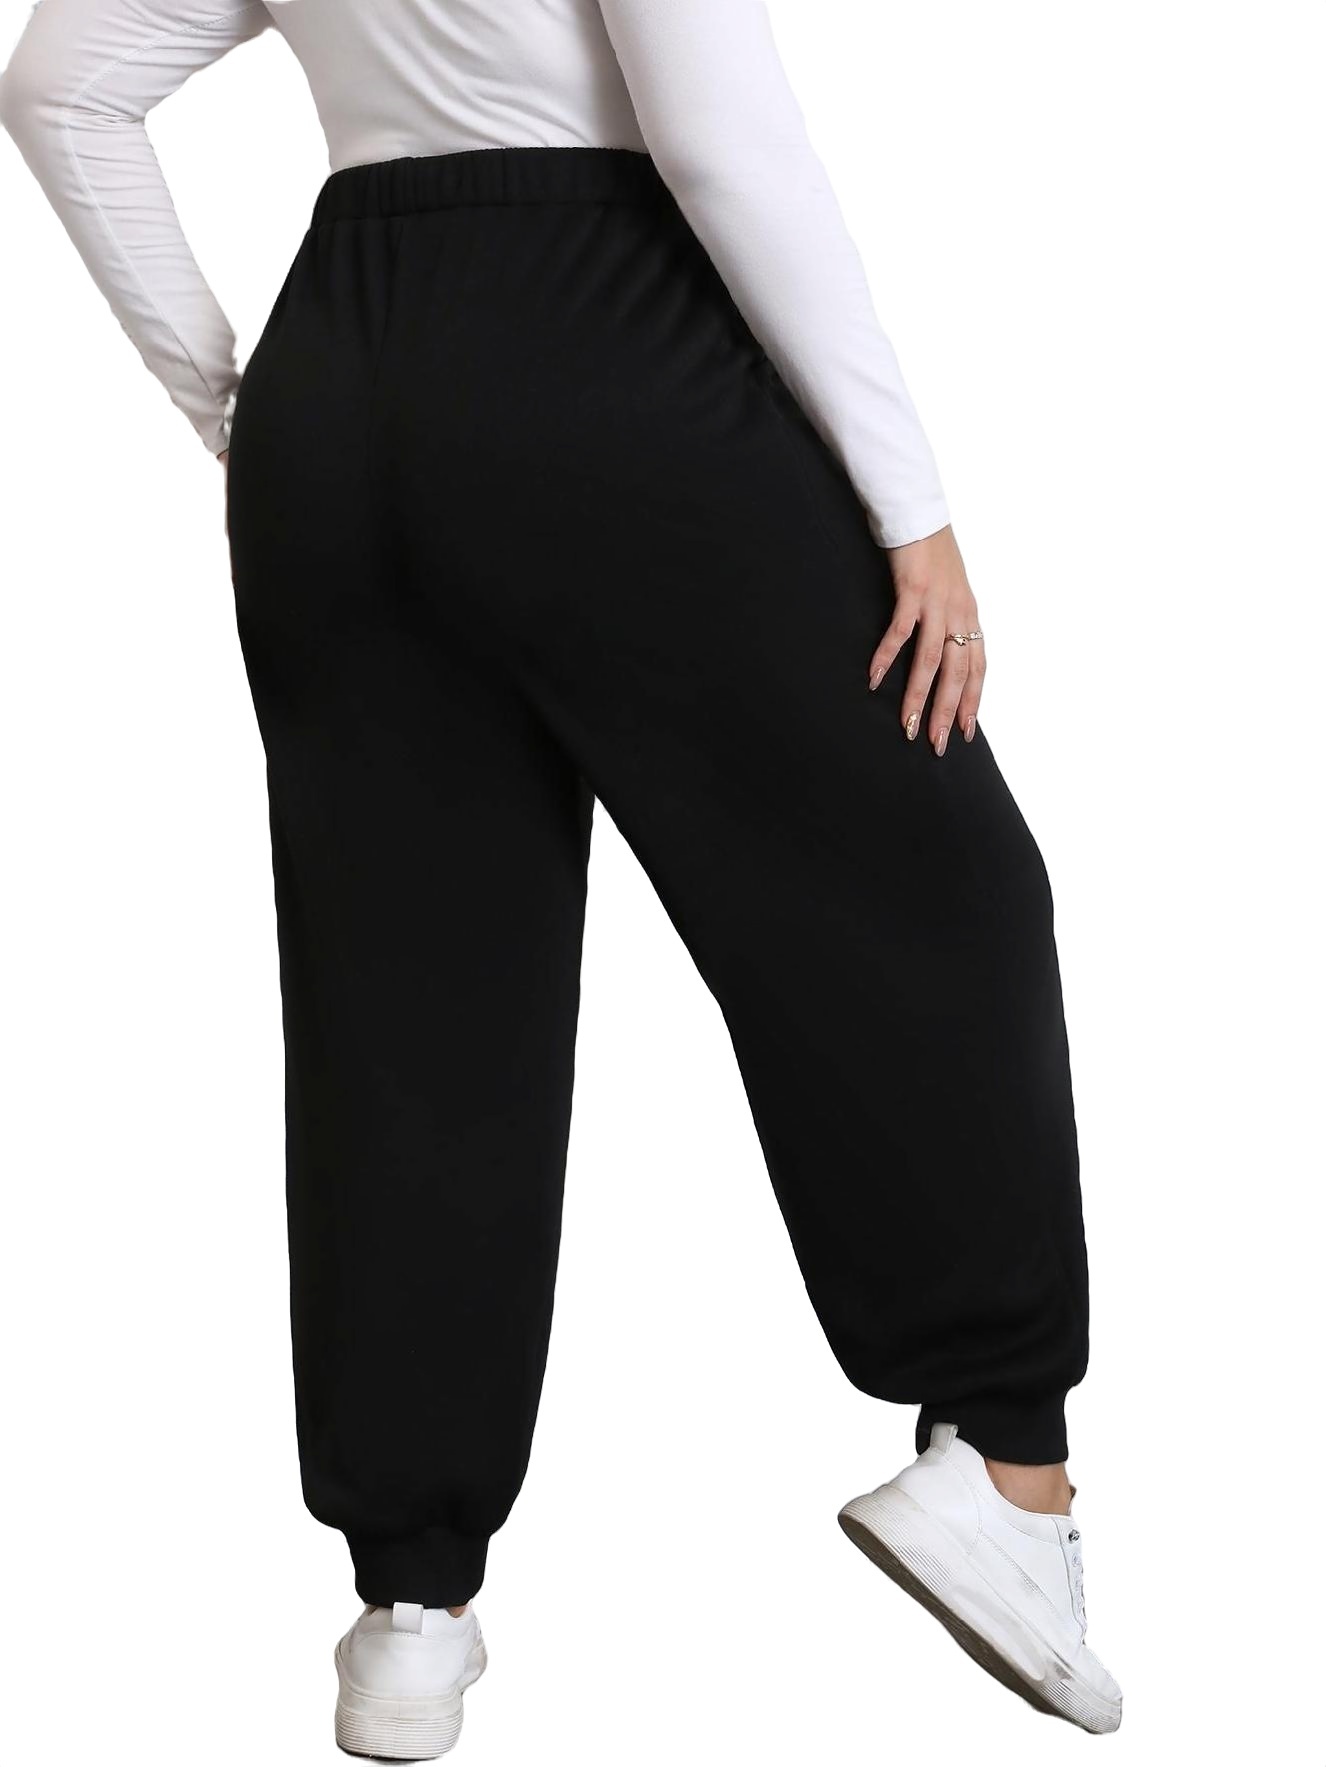 Plain Jogger Black Plus Size Sweatpants (Women's Plus Bottoms ...